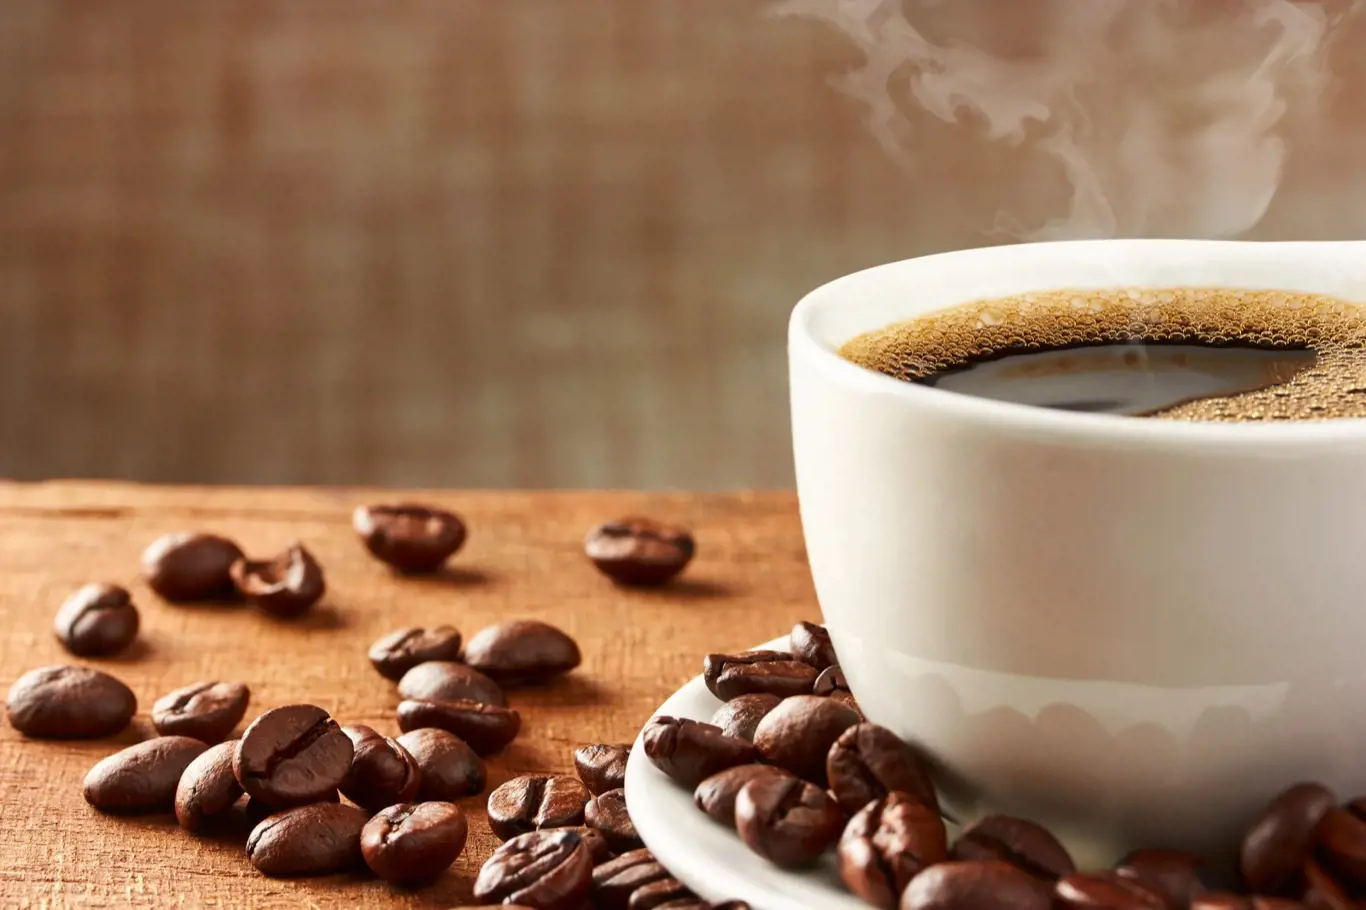 Kofein je vhodným pomocníkem proti únavě. Přemíra kofeinu ale oslabuje metabolismus a vyčerpává nadledvinky. Šálek kávy si raději vychutnejte s přáteli v klidu a s požitkem.